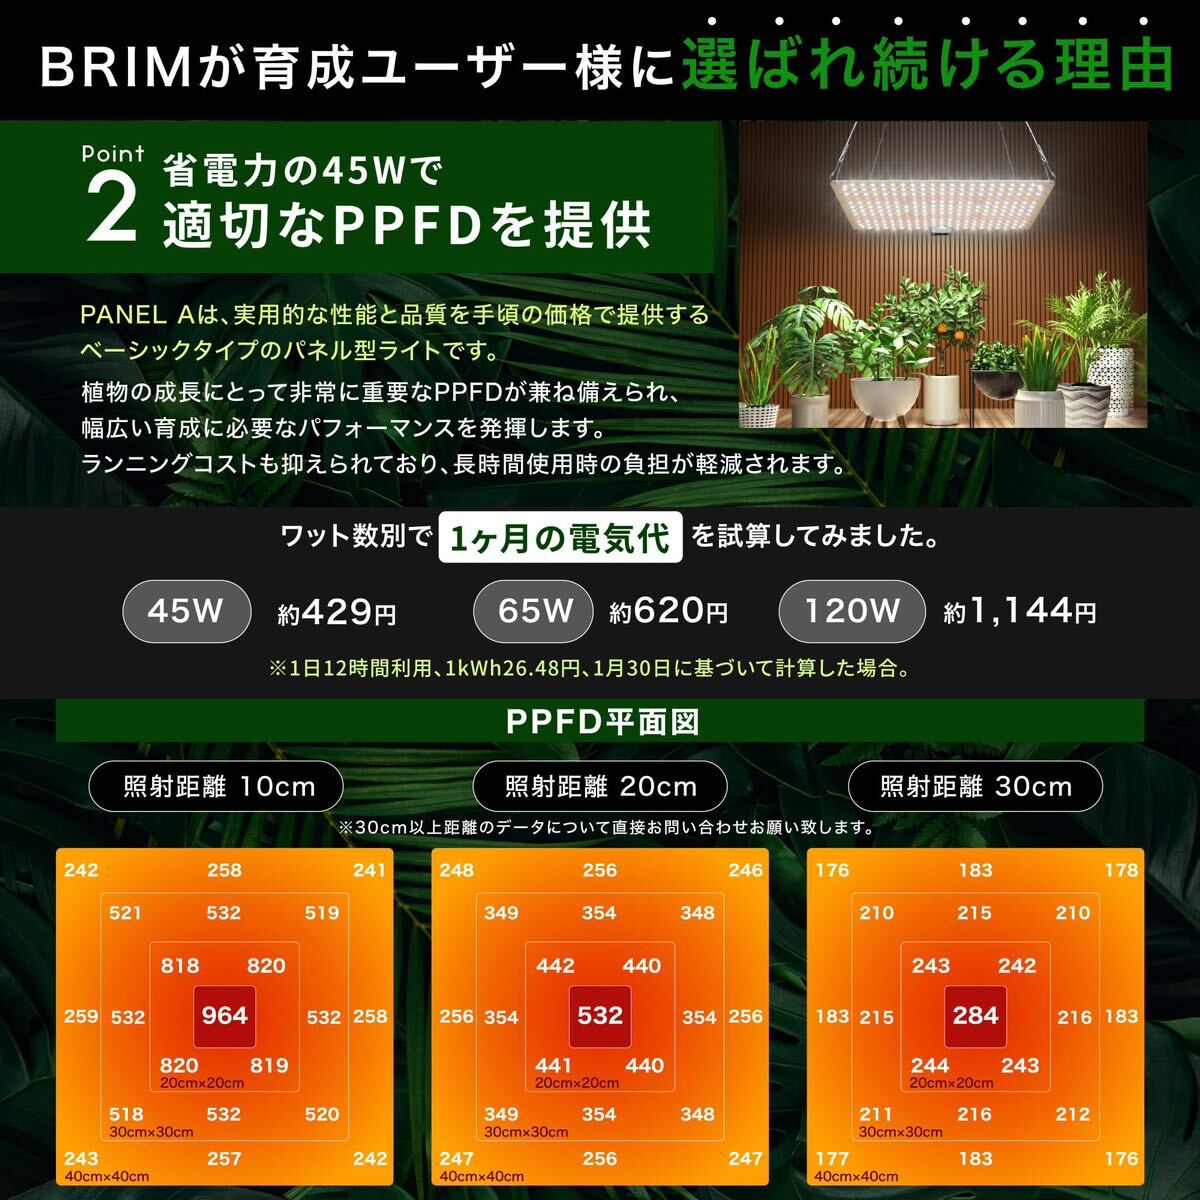 [ бесплатная доставка ]BRIM( желтохвост m) PANEL растения выращивание свет LED panel внутренний бренд полный spec ktoruIR/UV установка PL-A 3700K (1, 45W температура белый цвет )(A139)